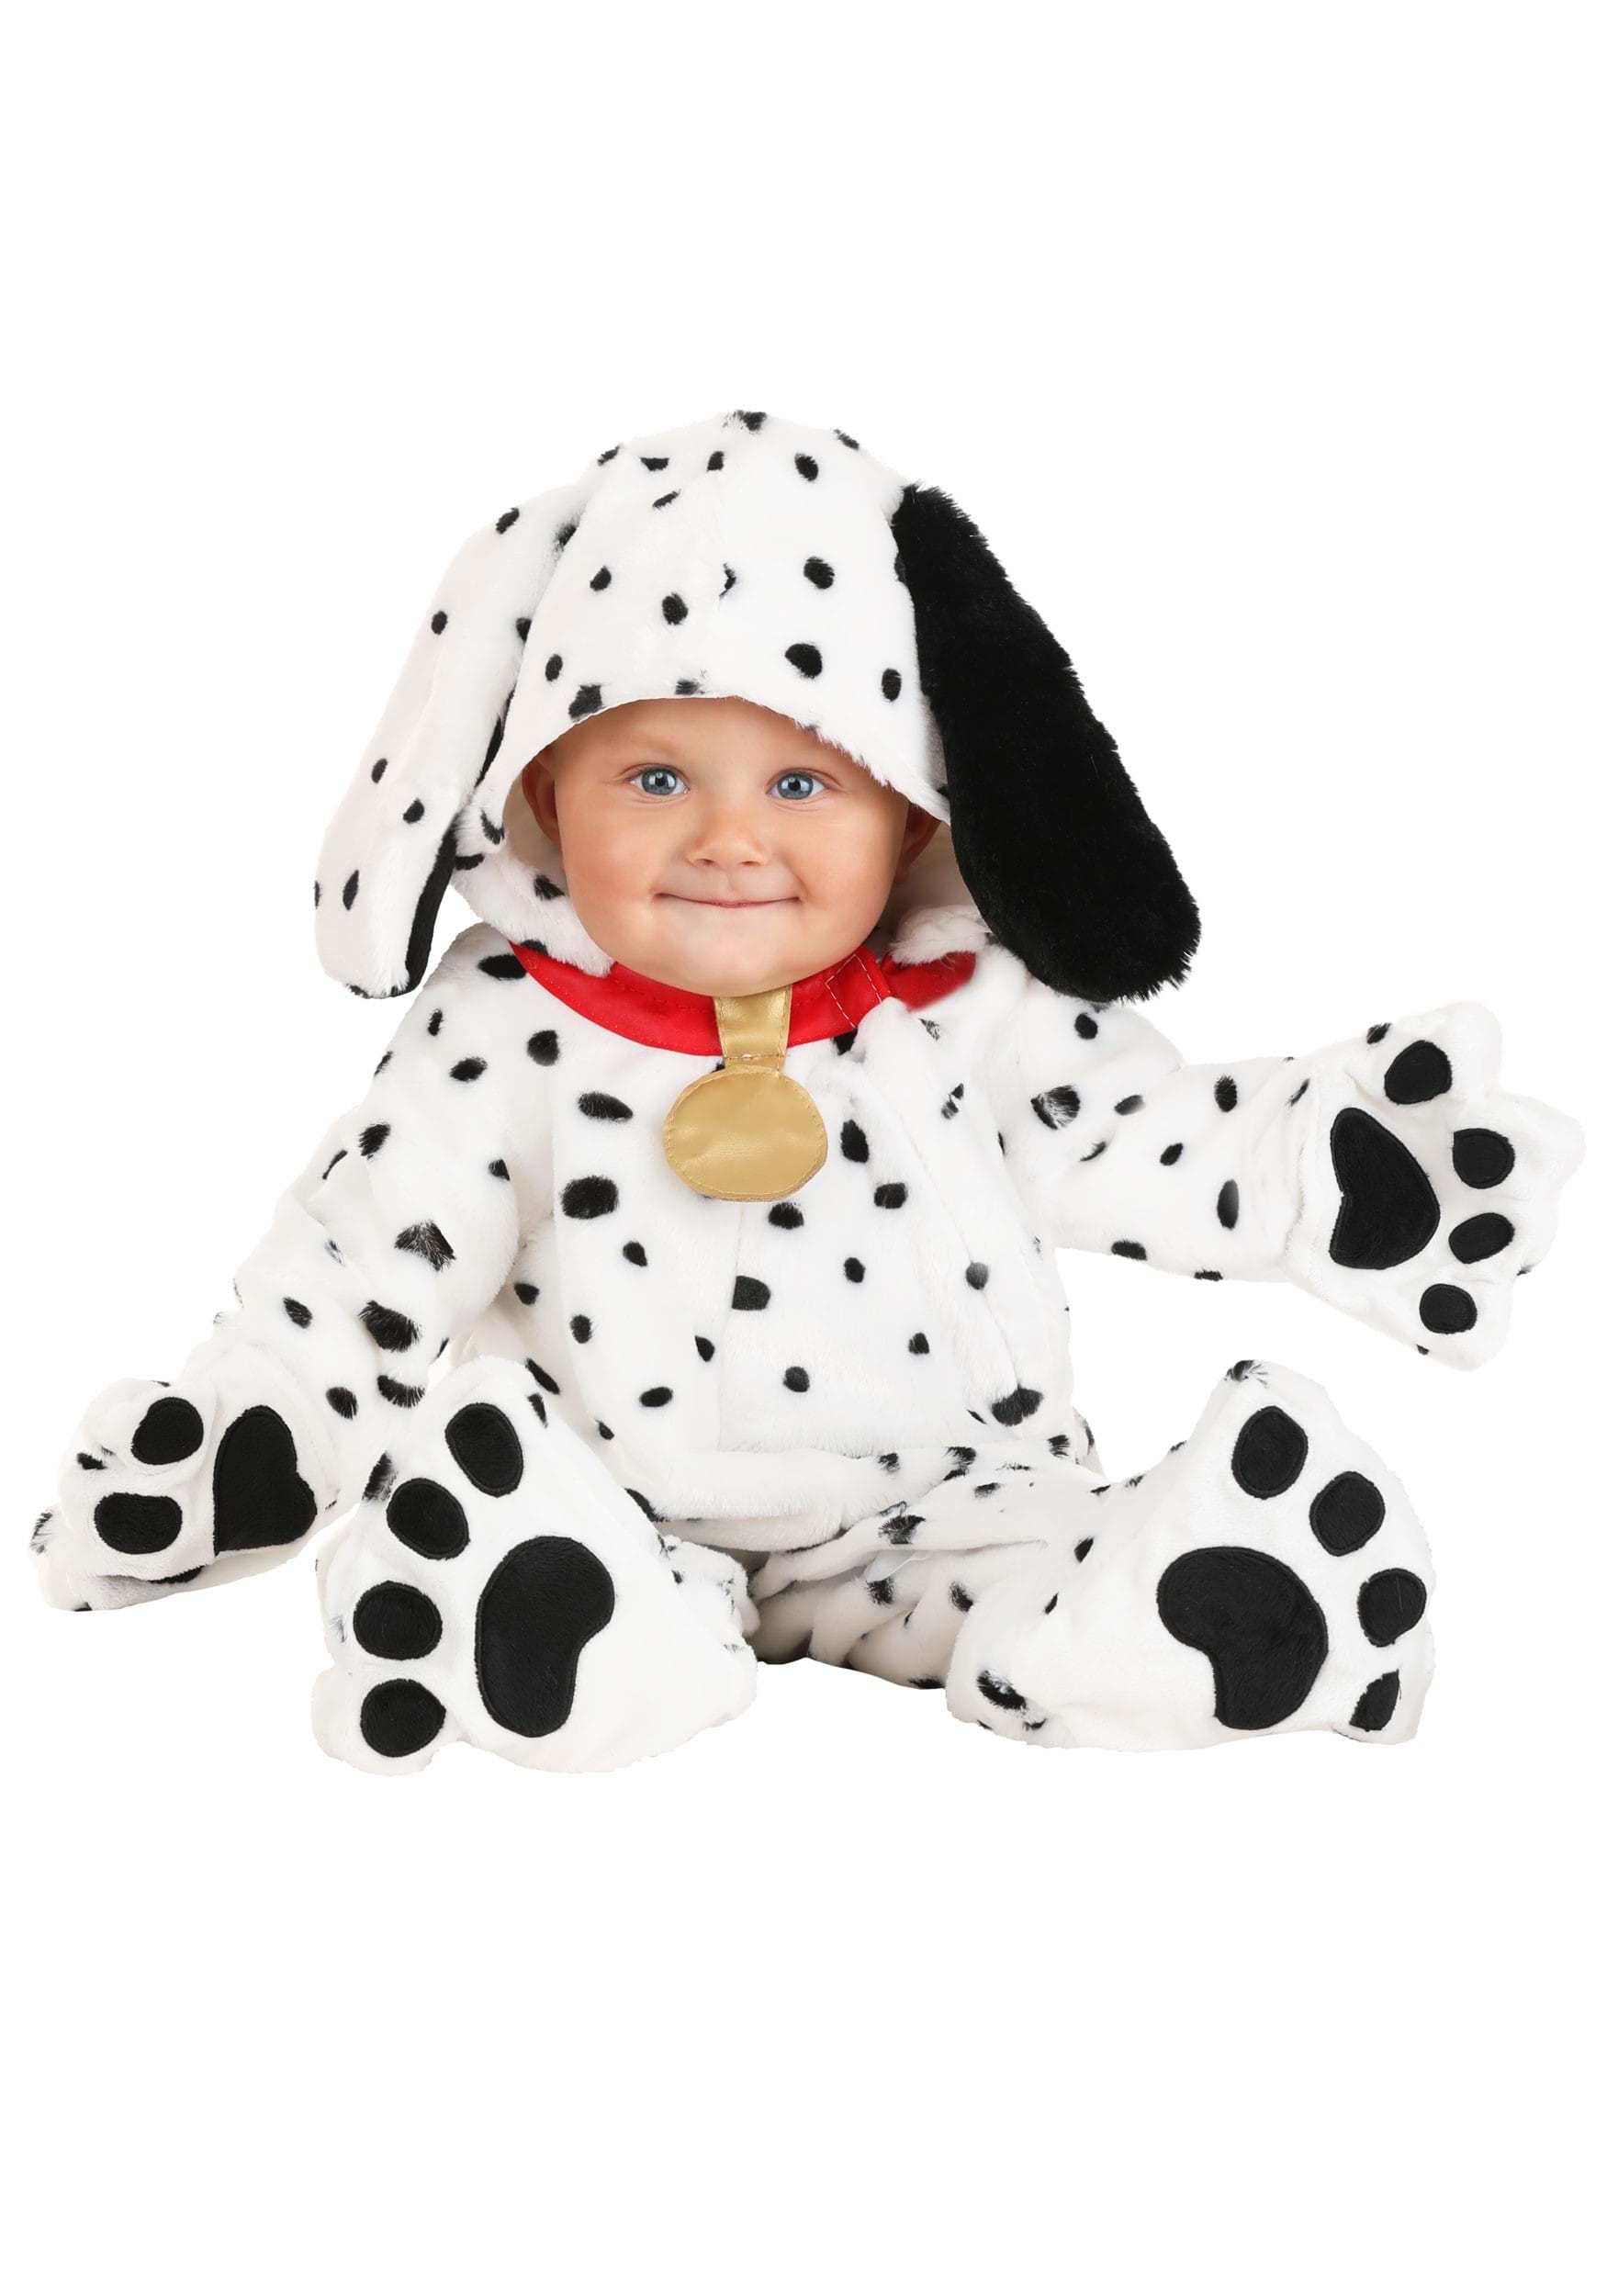 Photos - Fancy Dress FUN Costumes Plush Dalmatian Puppy Jumpsuit for Infants Black/White FU